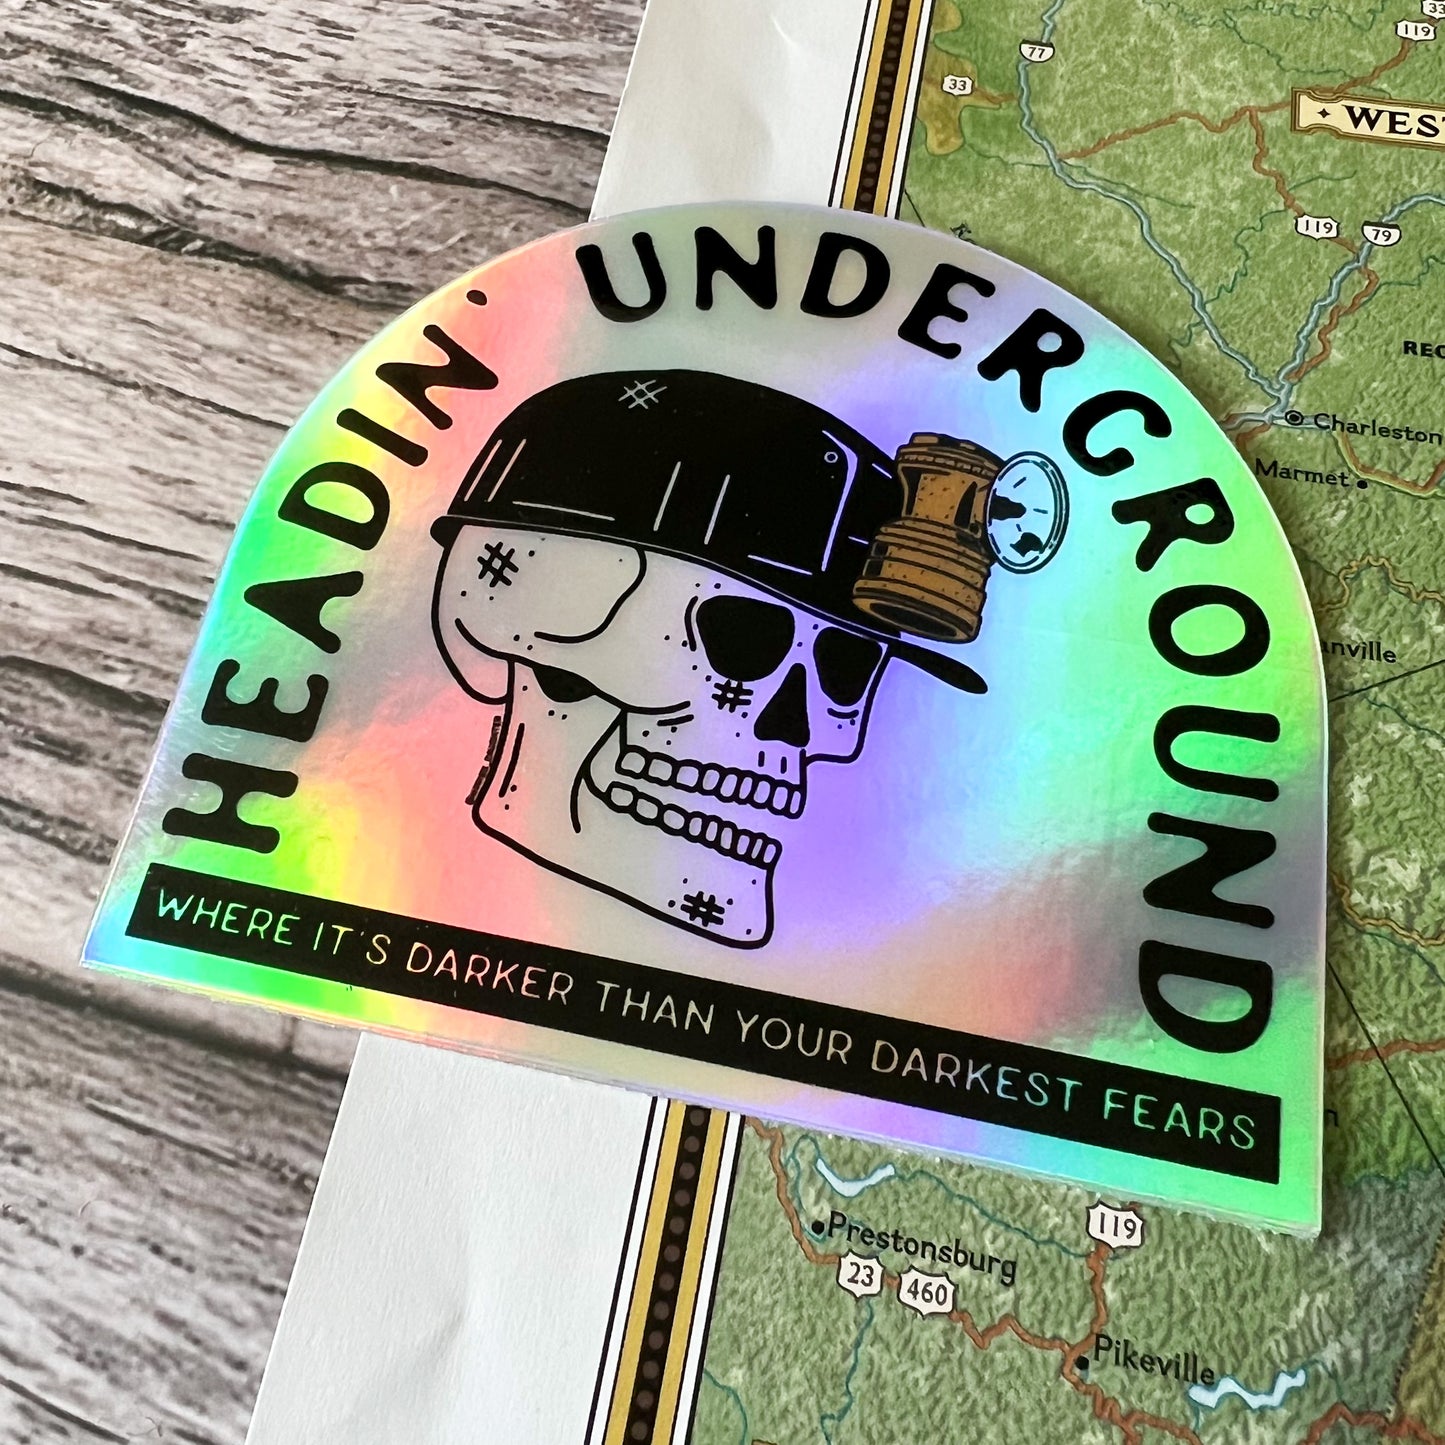 Headin’ Underground // sticker